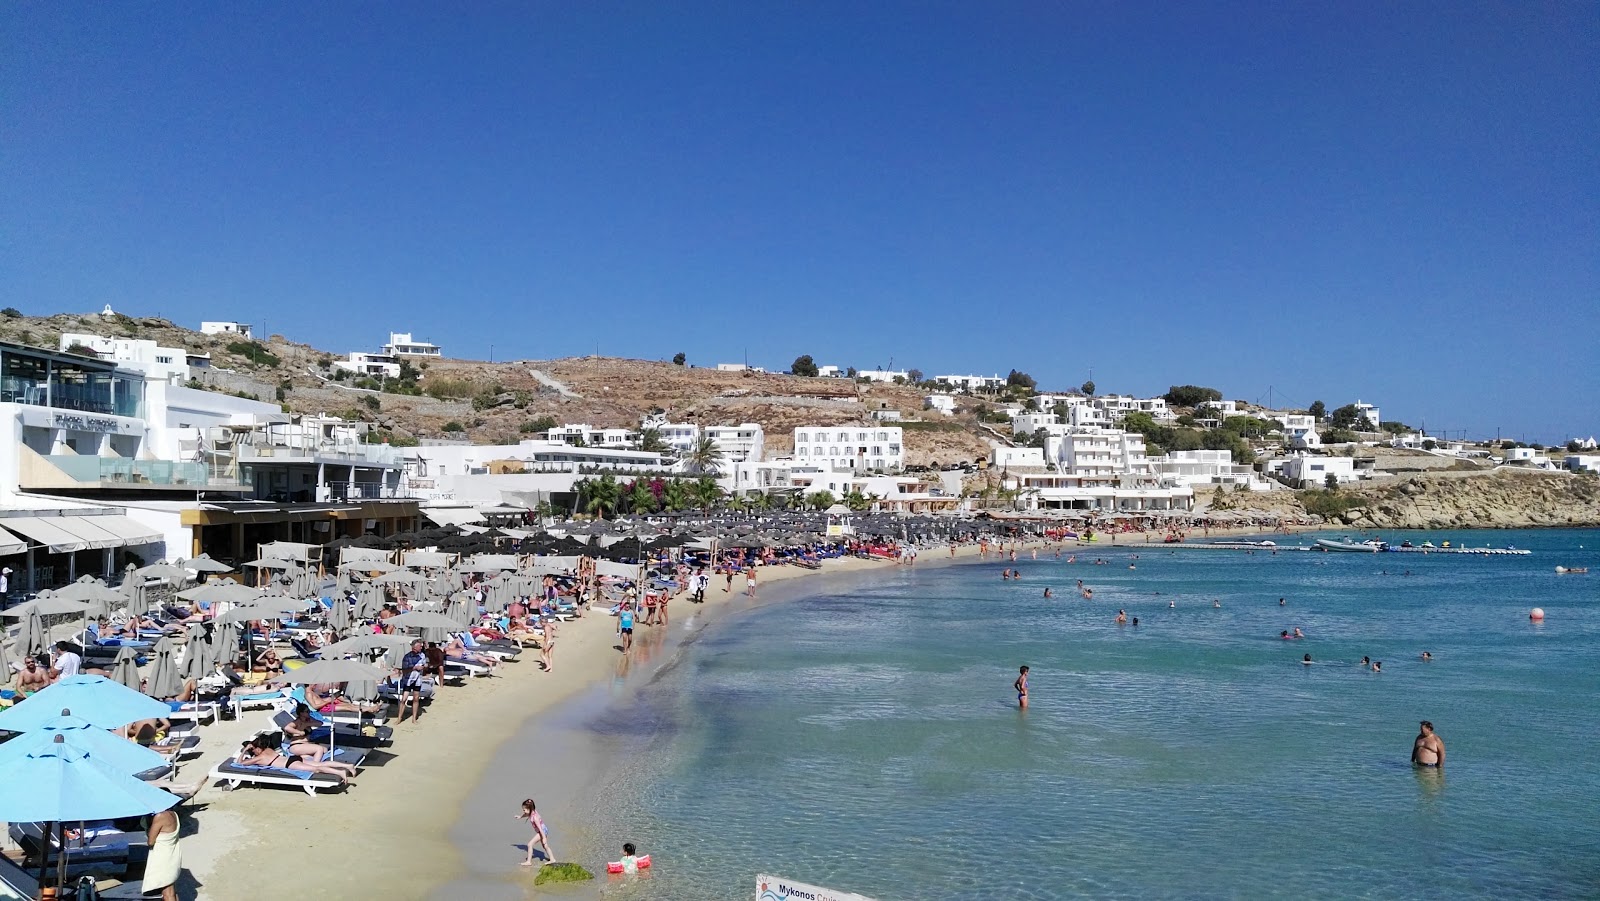 Platis Gialos Plajı'in fotoğrafı parlak ince kum yüzey ile